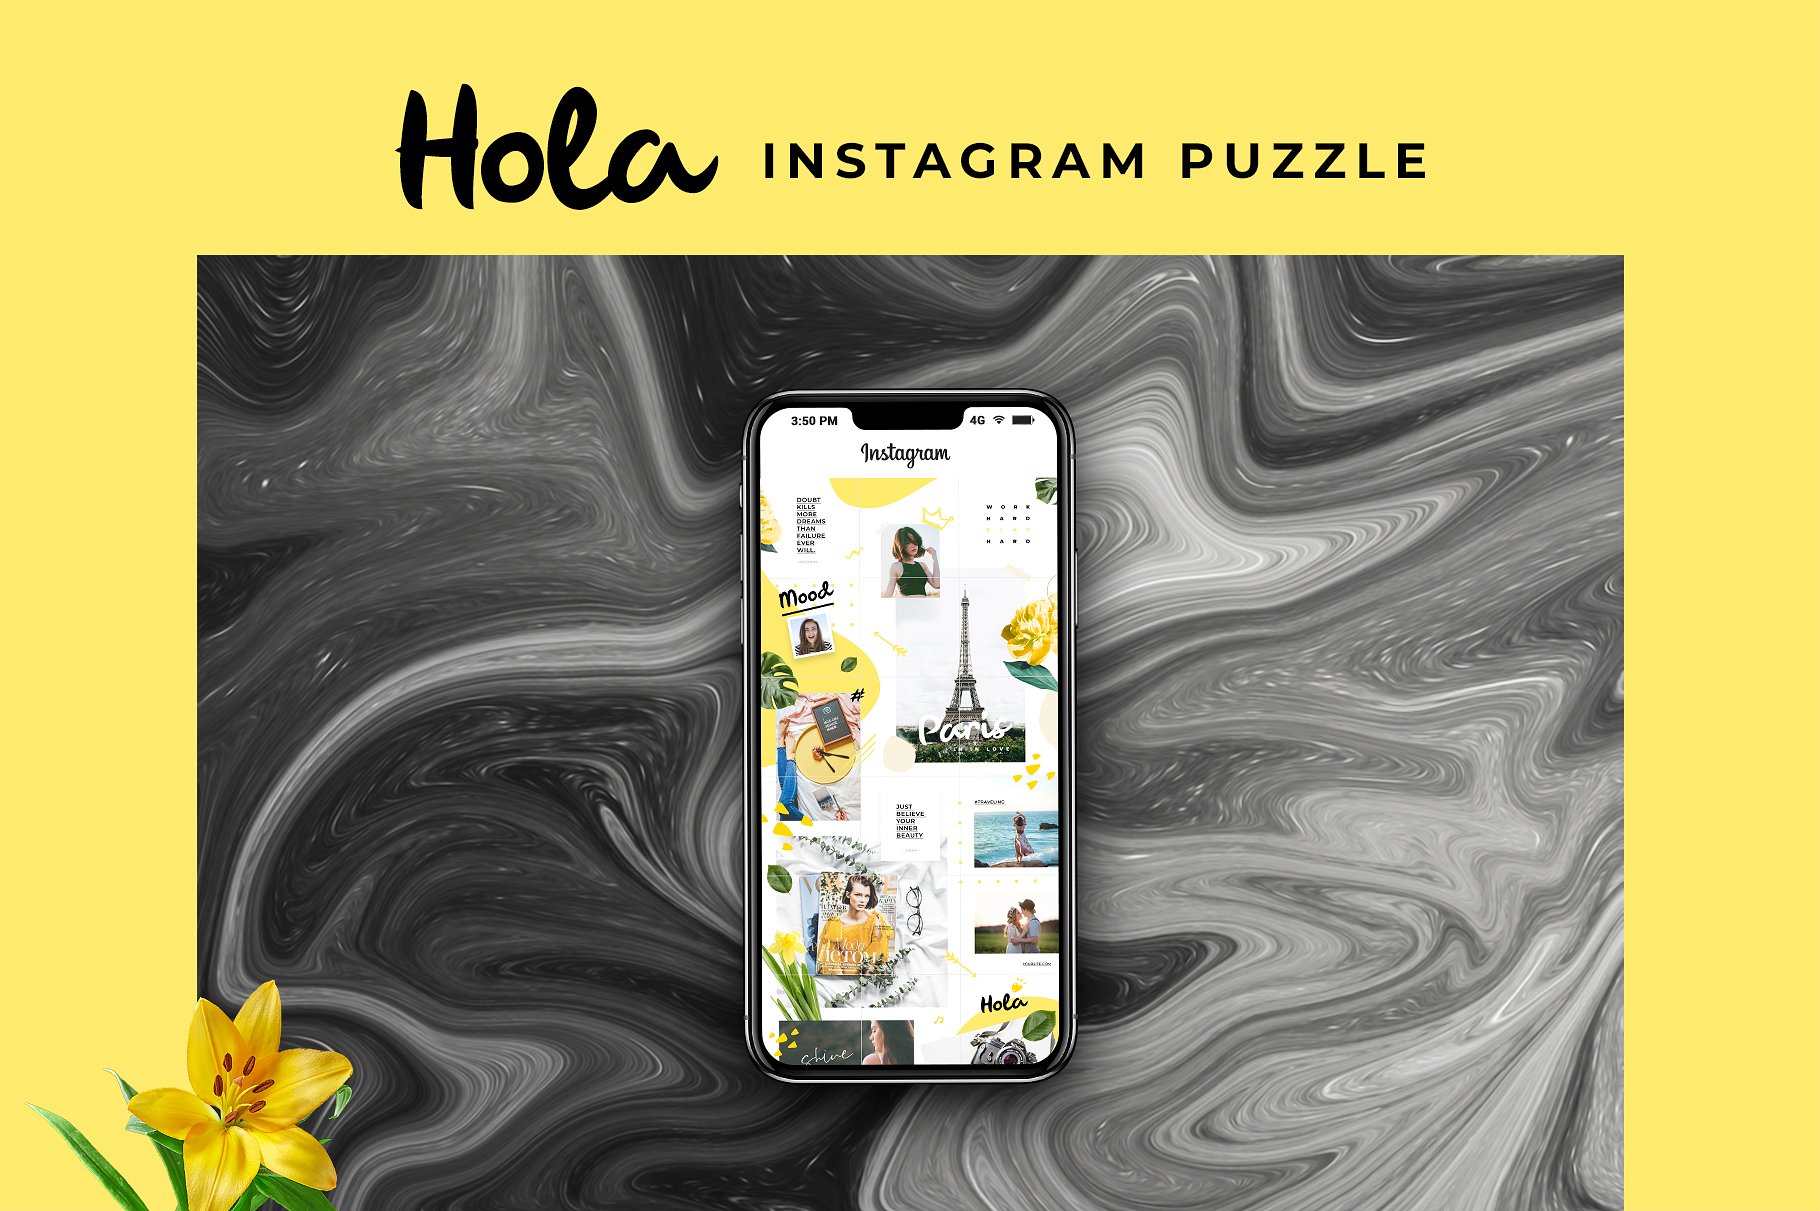 时尚极简的Instagram社交媒体模板非凡图库精选 Instagram Puzzle – Hola [psd]插图(2)